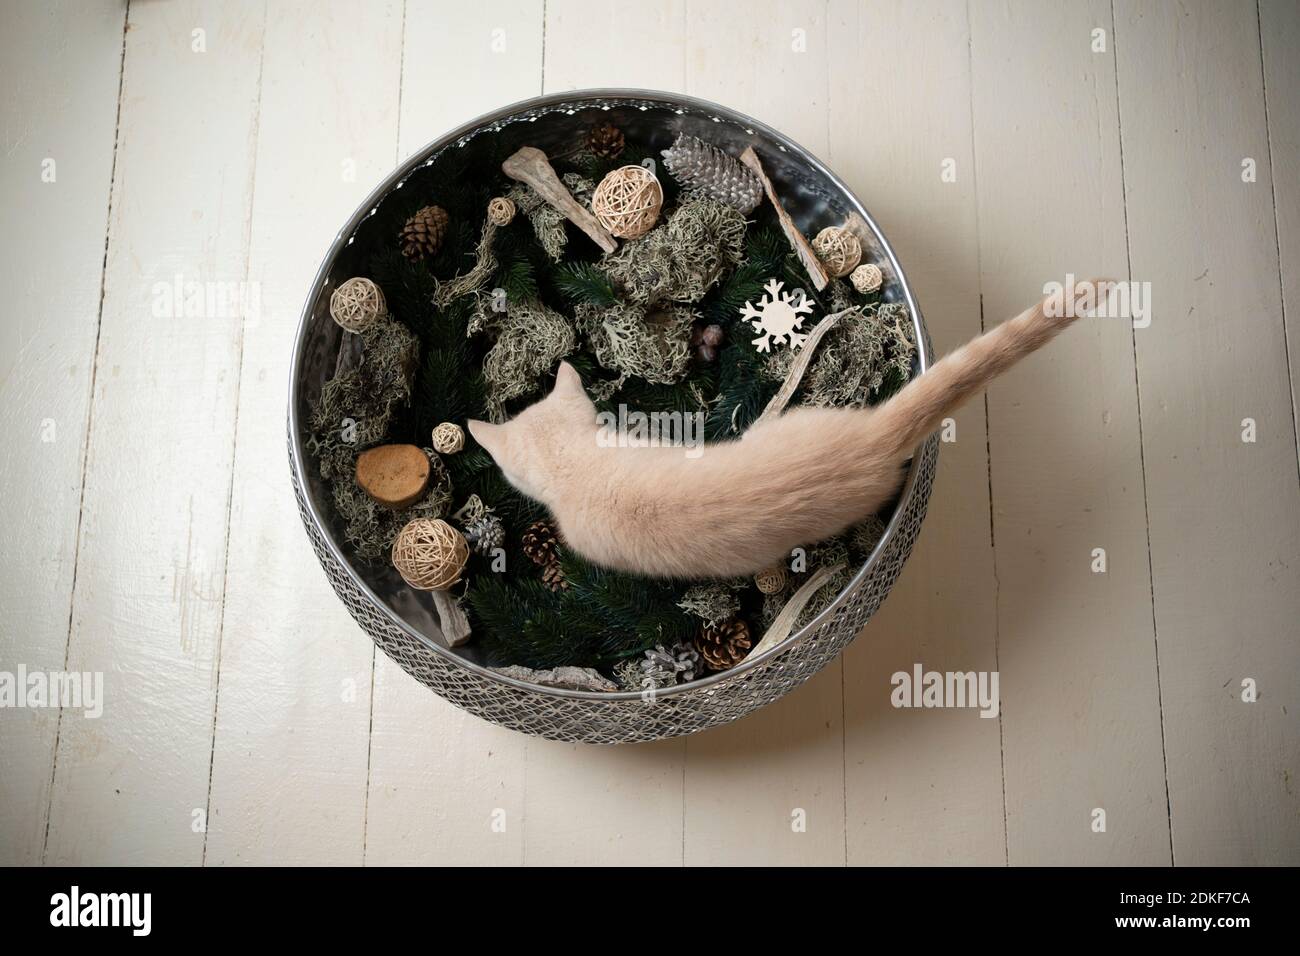 vue de dessus d'un chaton britannique de shorthair de couleur crème à l'intérieur de bol avec éléments de décodage d'hiver Banque D'Images